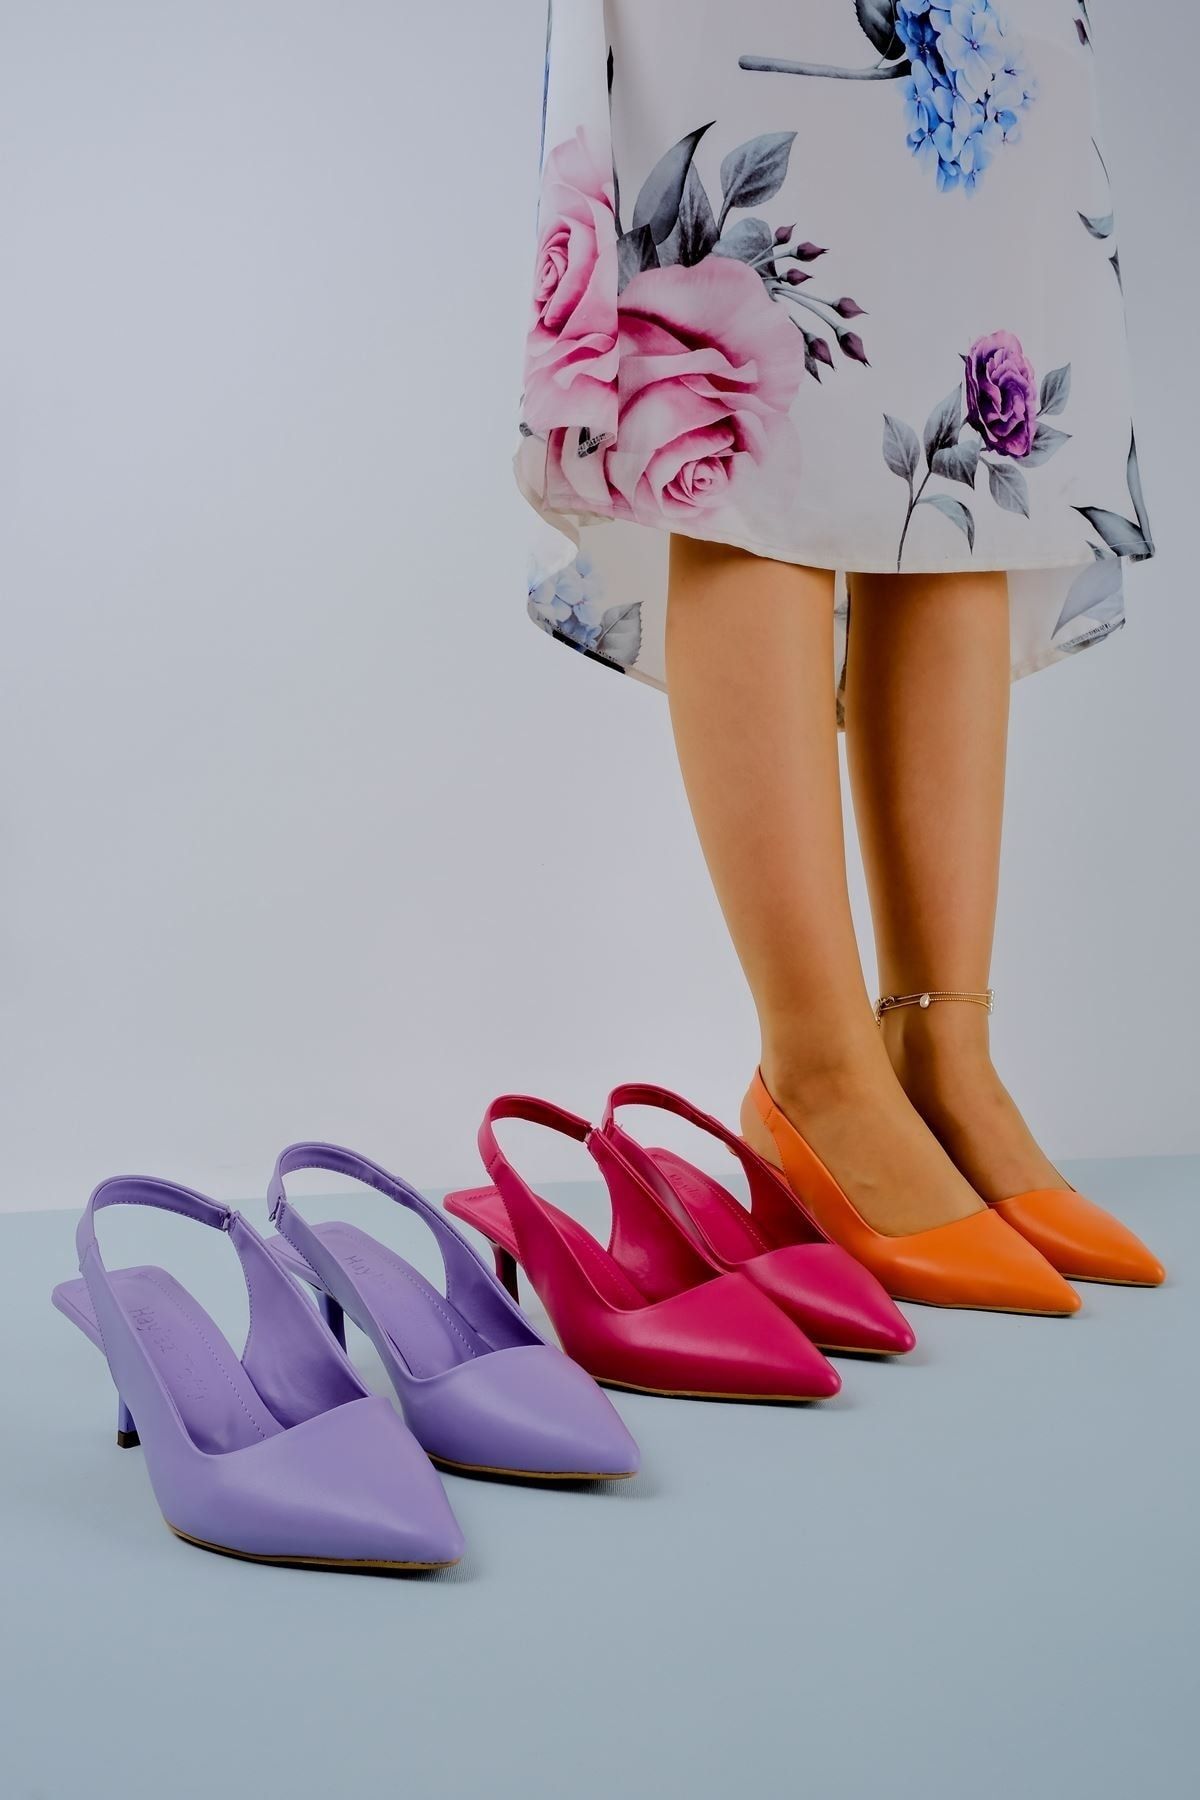 LAL SHOES & BAGS Kadın Topuklu Ayakkabı Arkası Açık